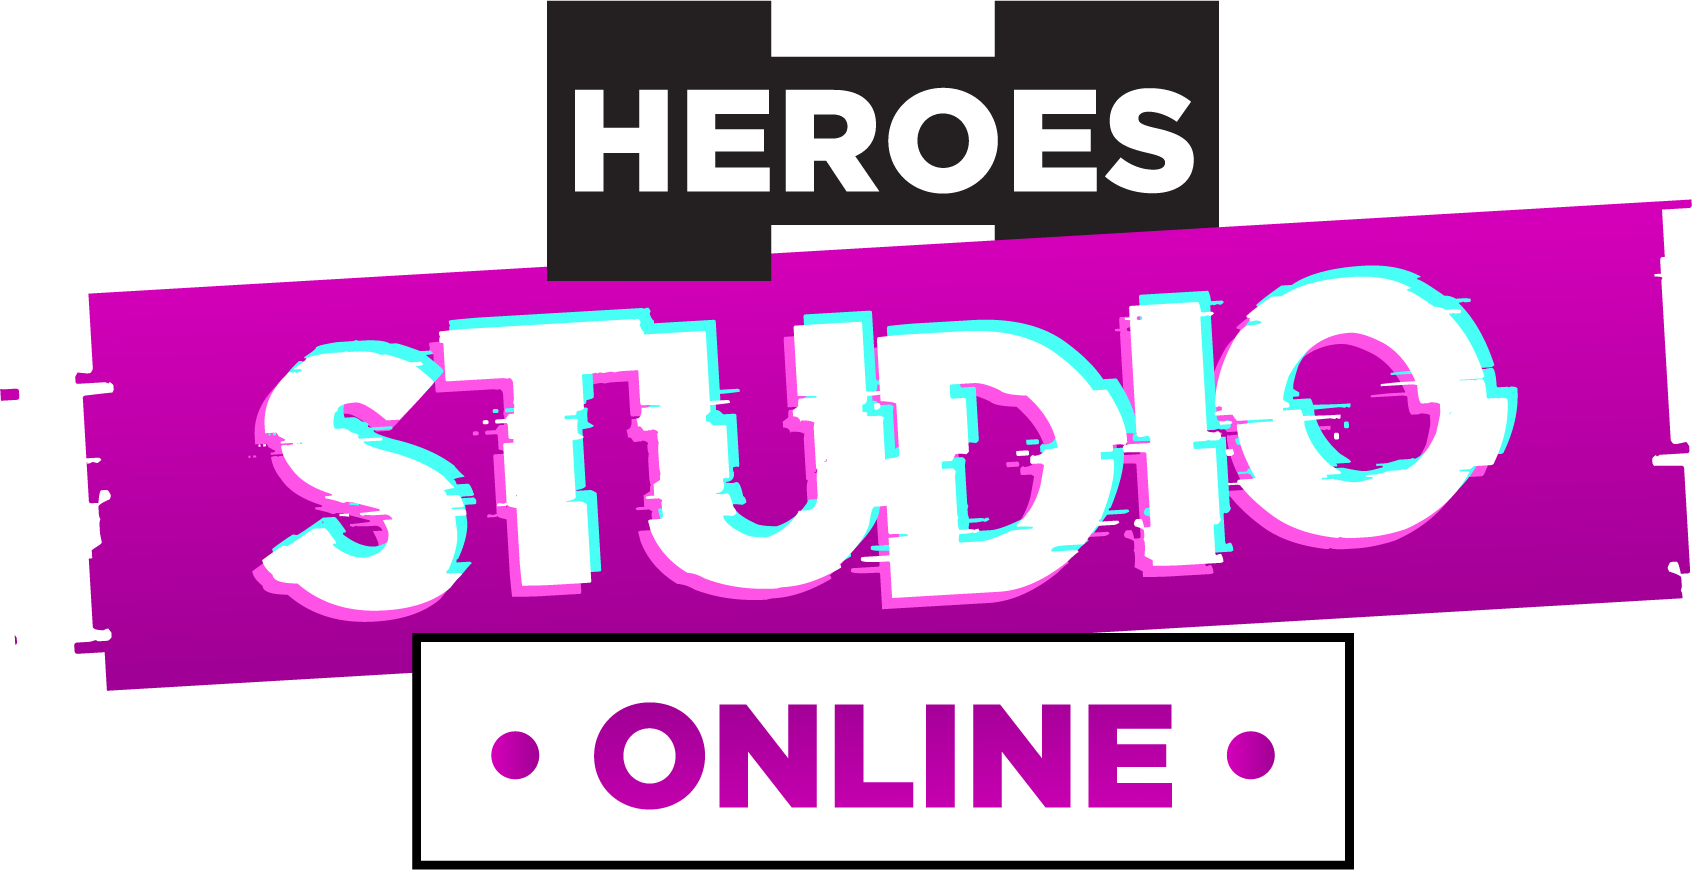 Heroes studio